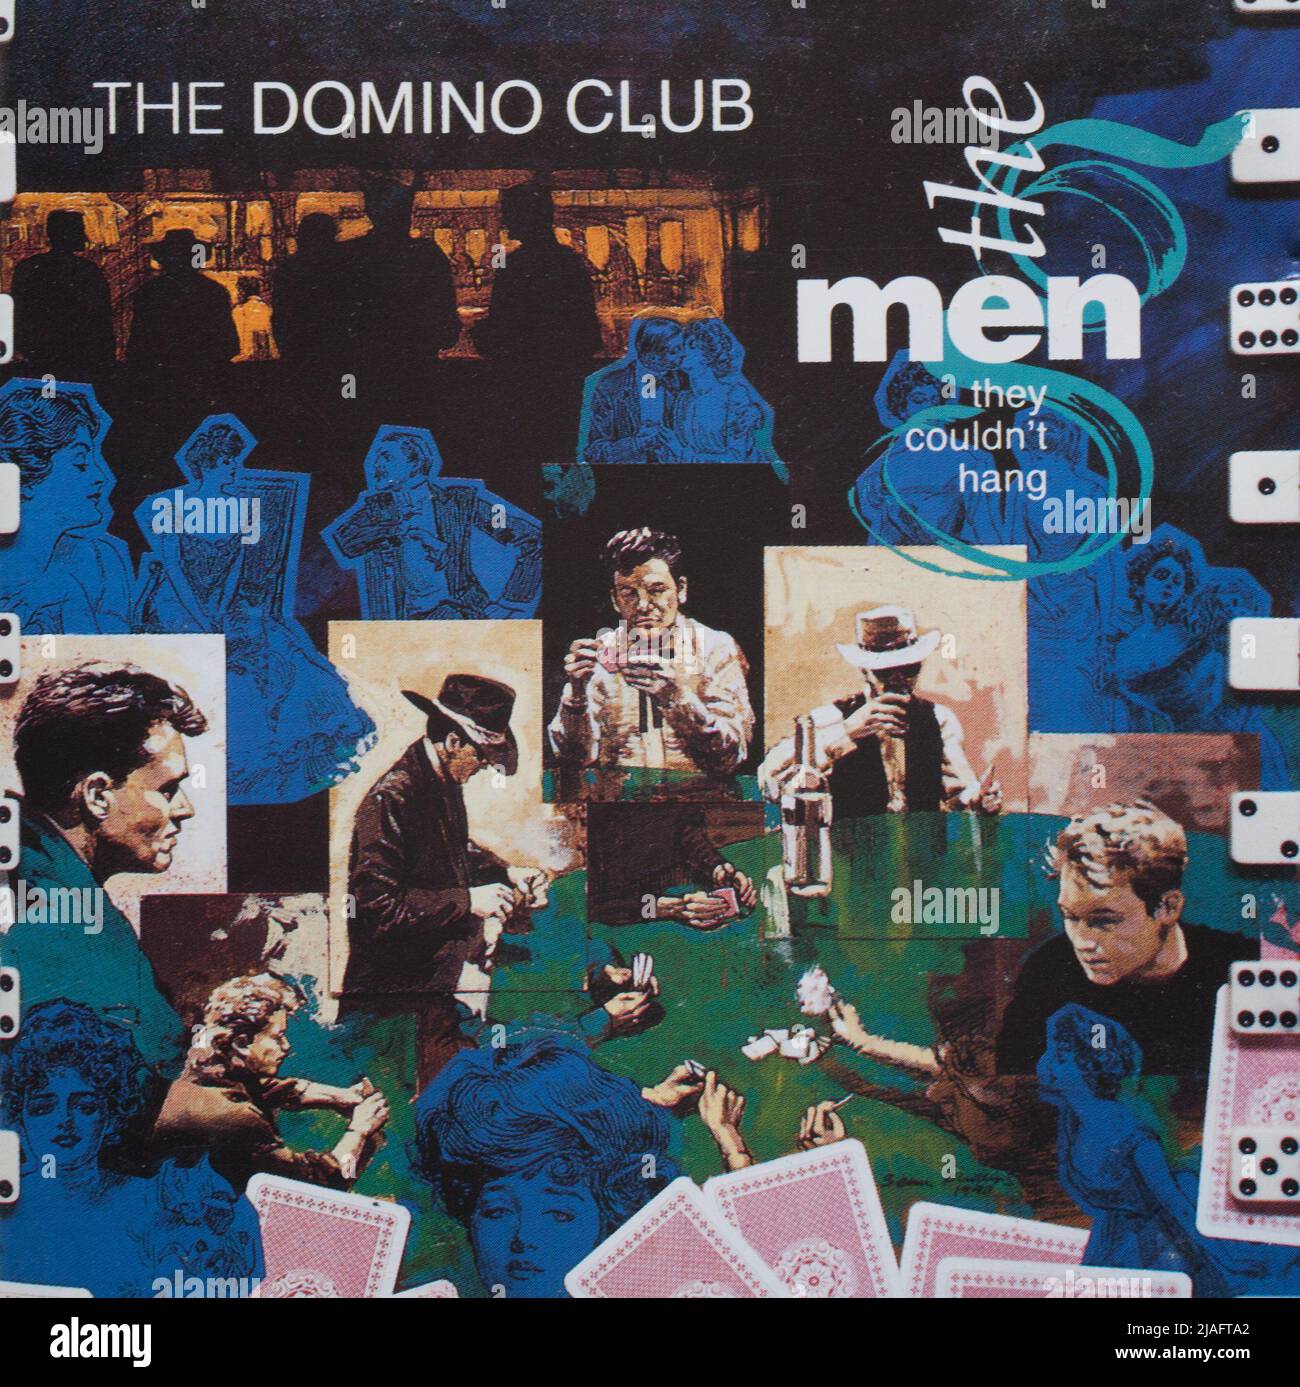 Das cd-Album-Cover zu The Domino Club von den Männern, die sie nicht aufhängen konnten Stockfoto